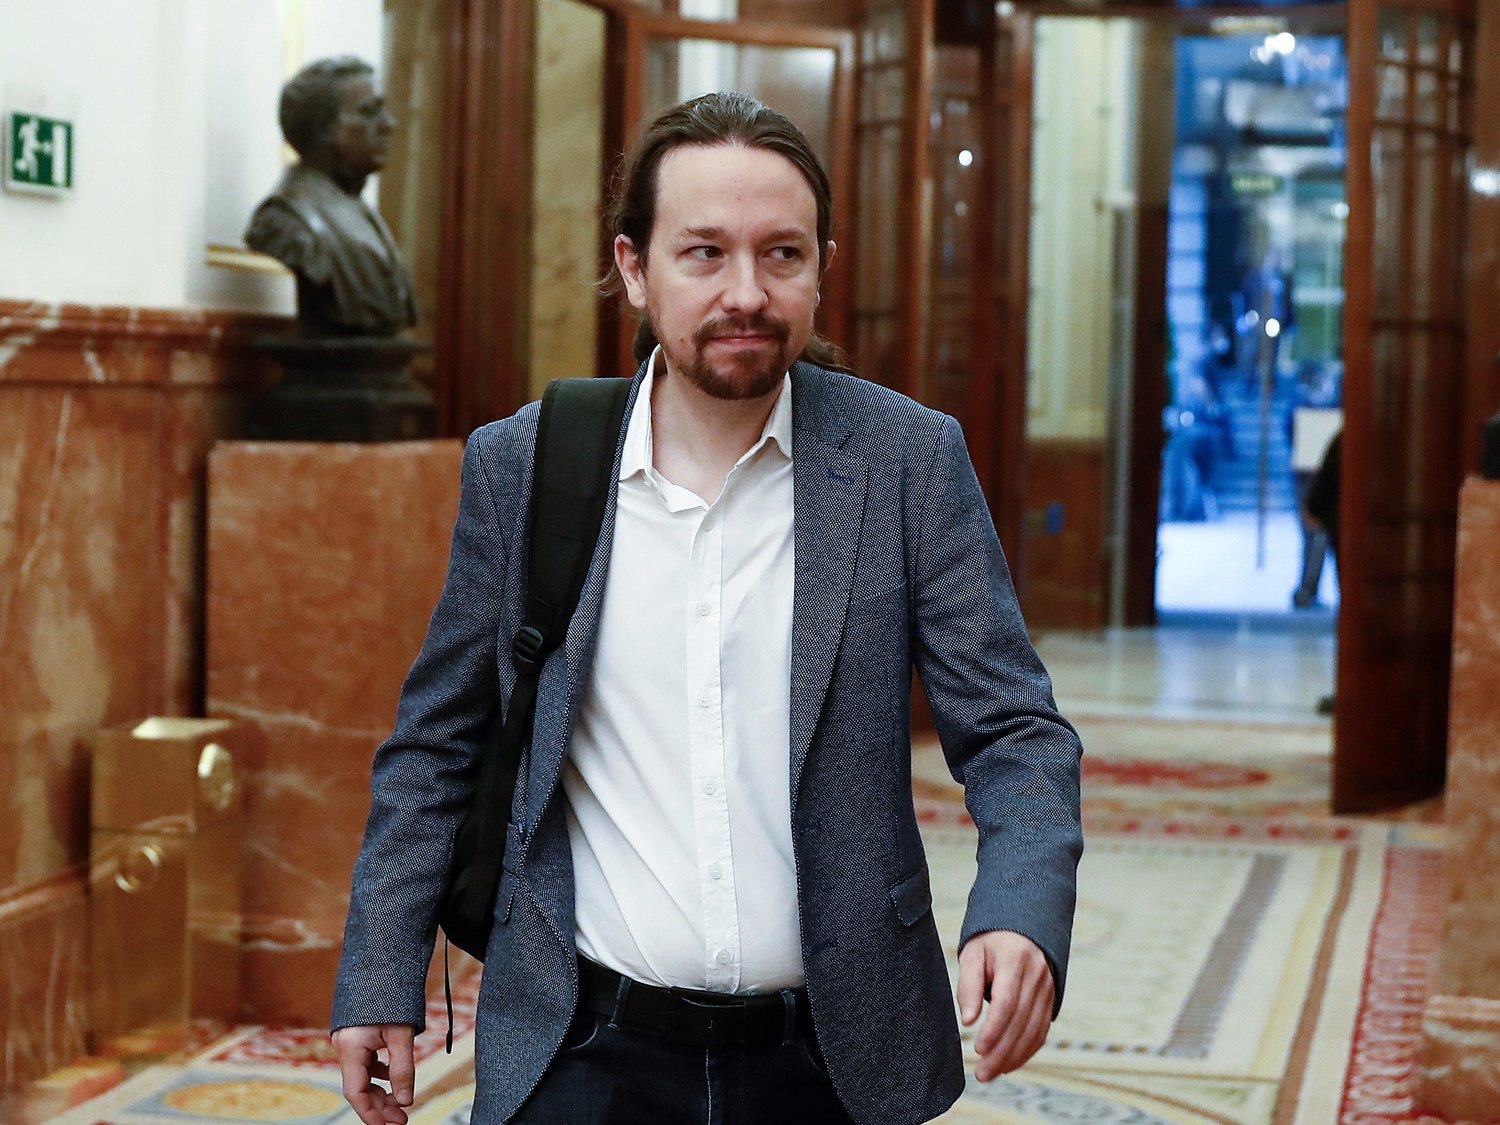 El juez de 'Neurona' archiva la investigación sobre los supuestos sobresueldos en Podemos